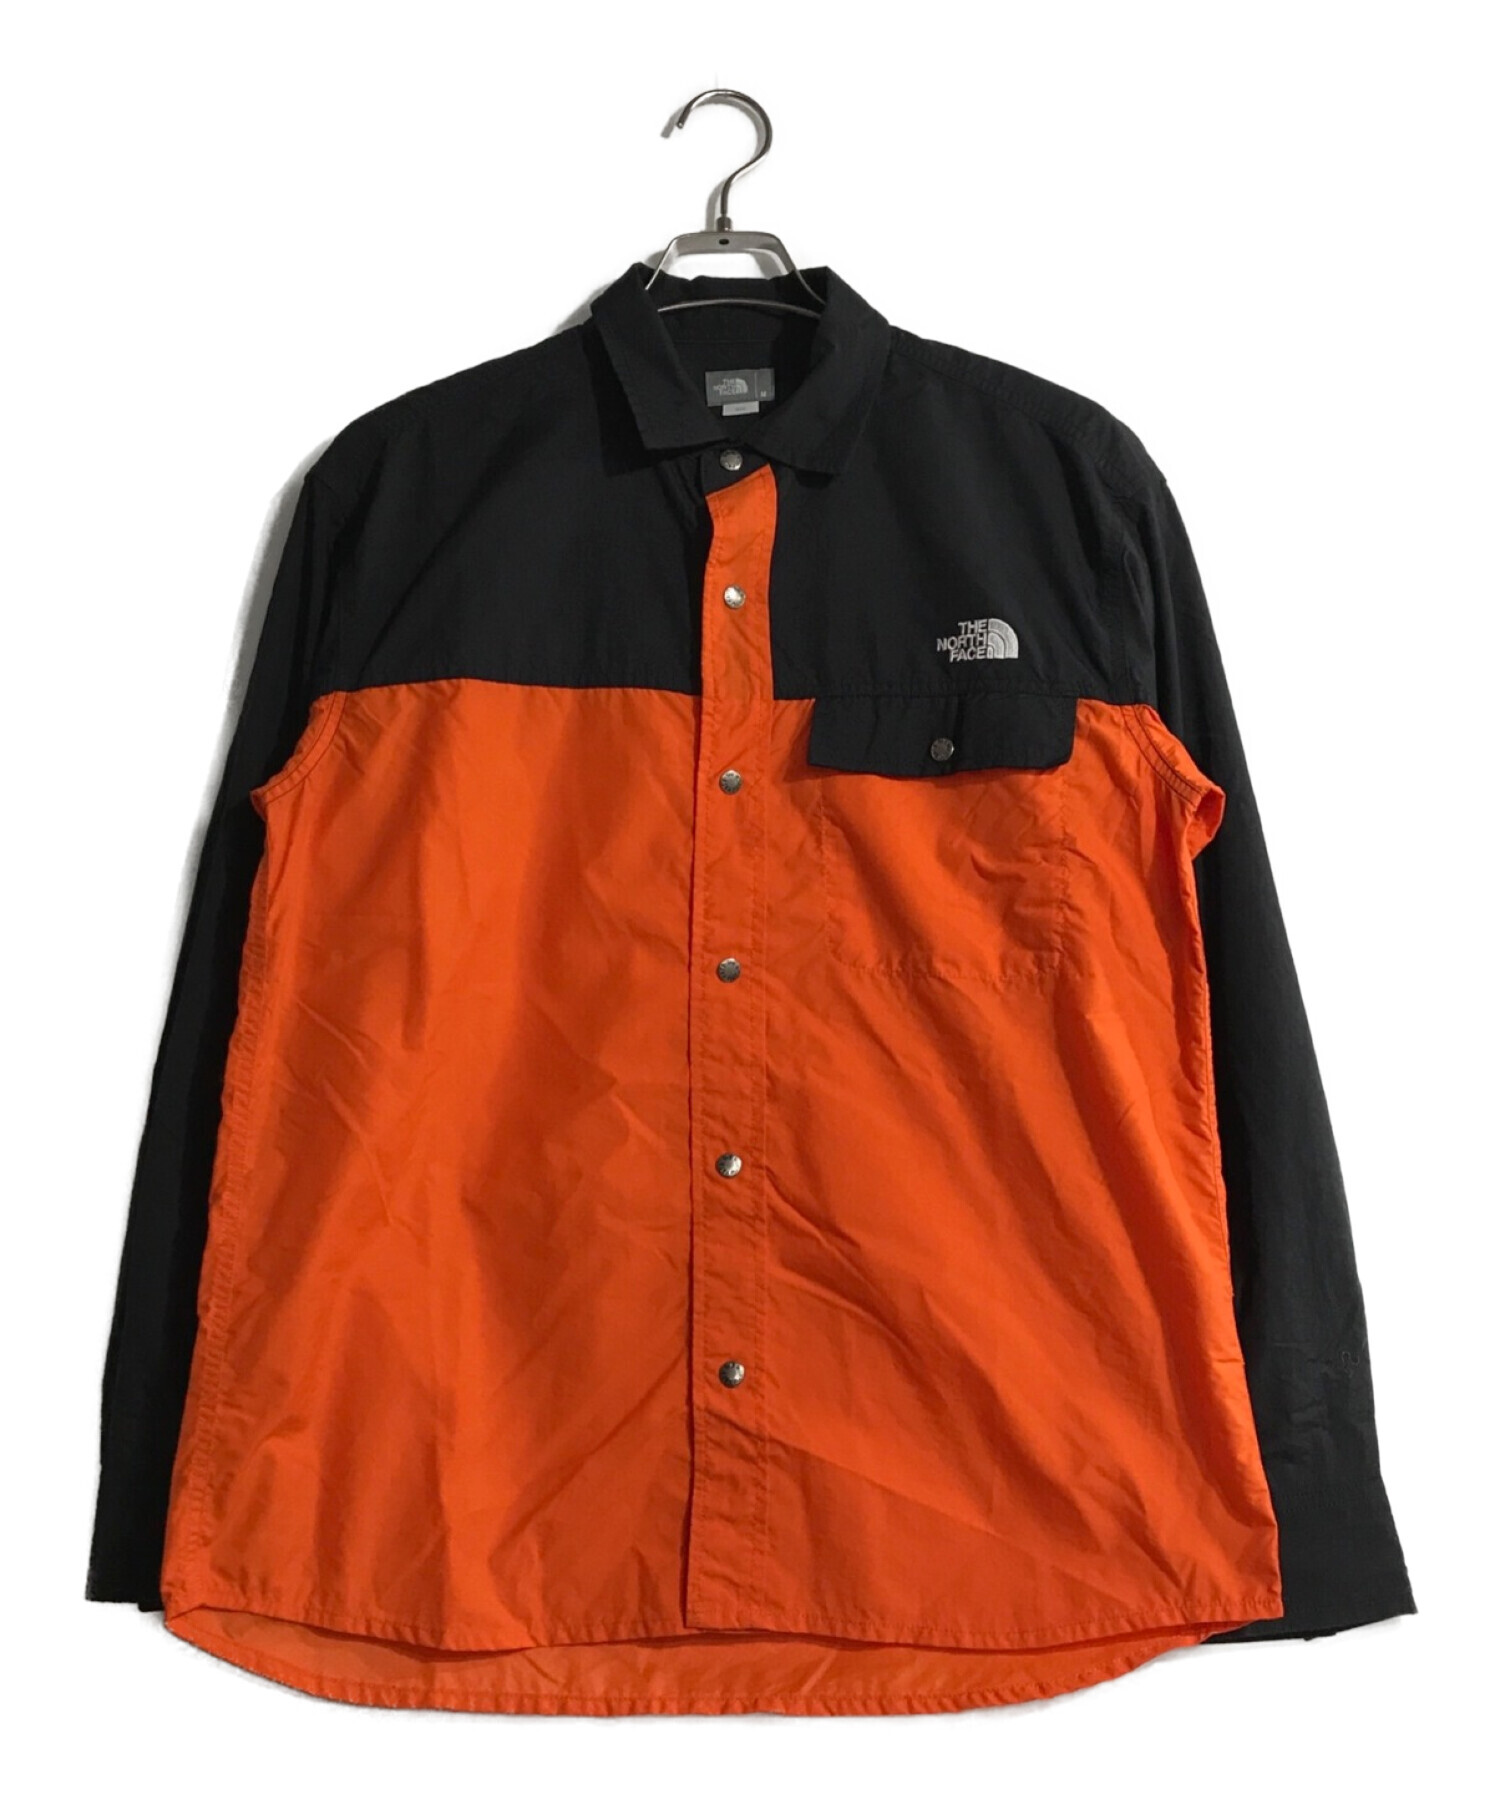 THE NORTH FACE (ザ ノース フェイス) ロングスリーブヌプシシャツ ブラック×オレンジ サイズ:M